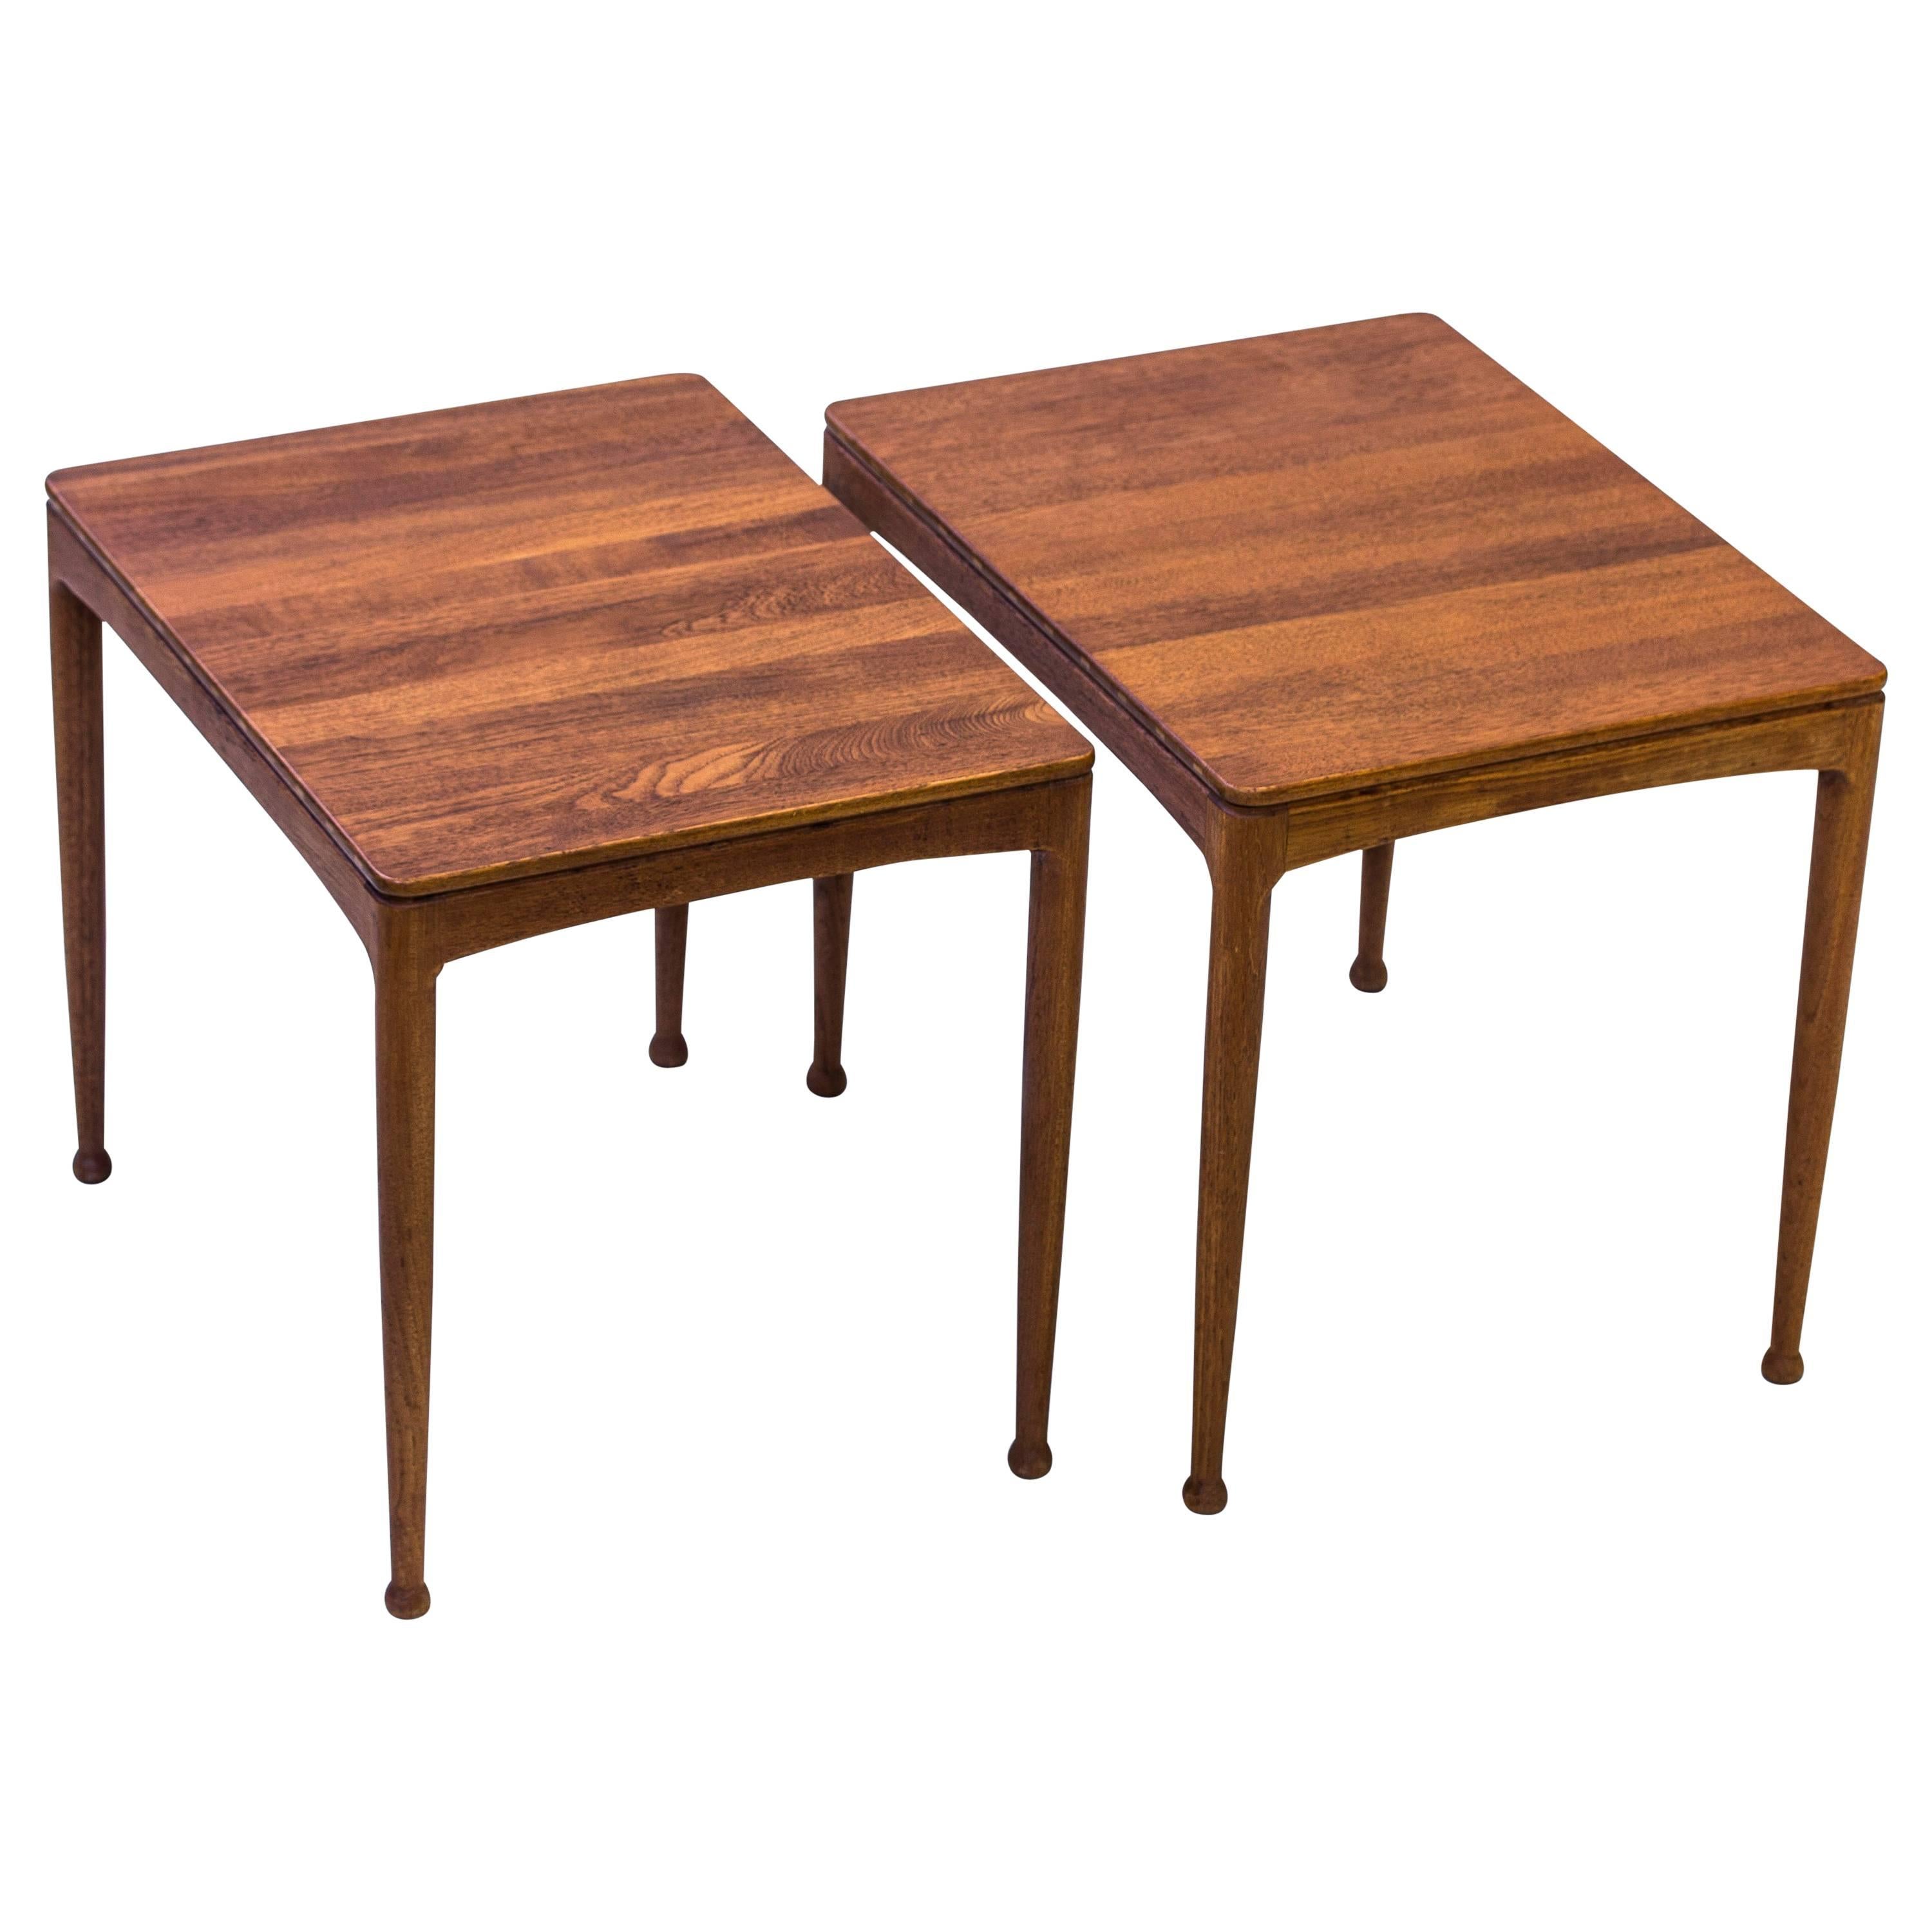 "Micado" Solid Teak Side Tables by Myrstrand & Engström, Sweden, 1950s